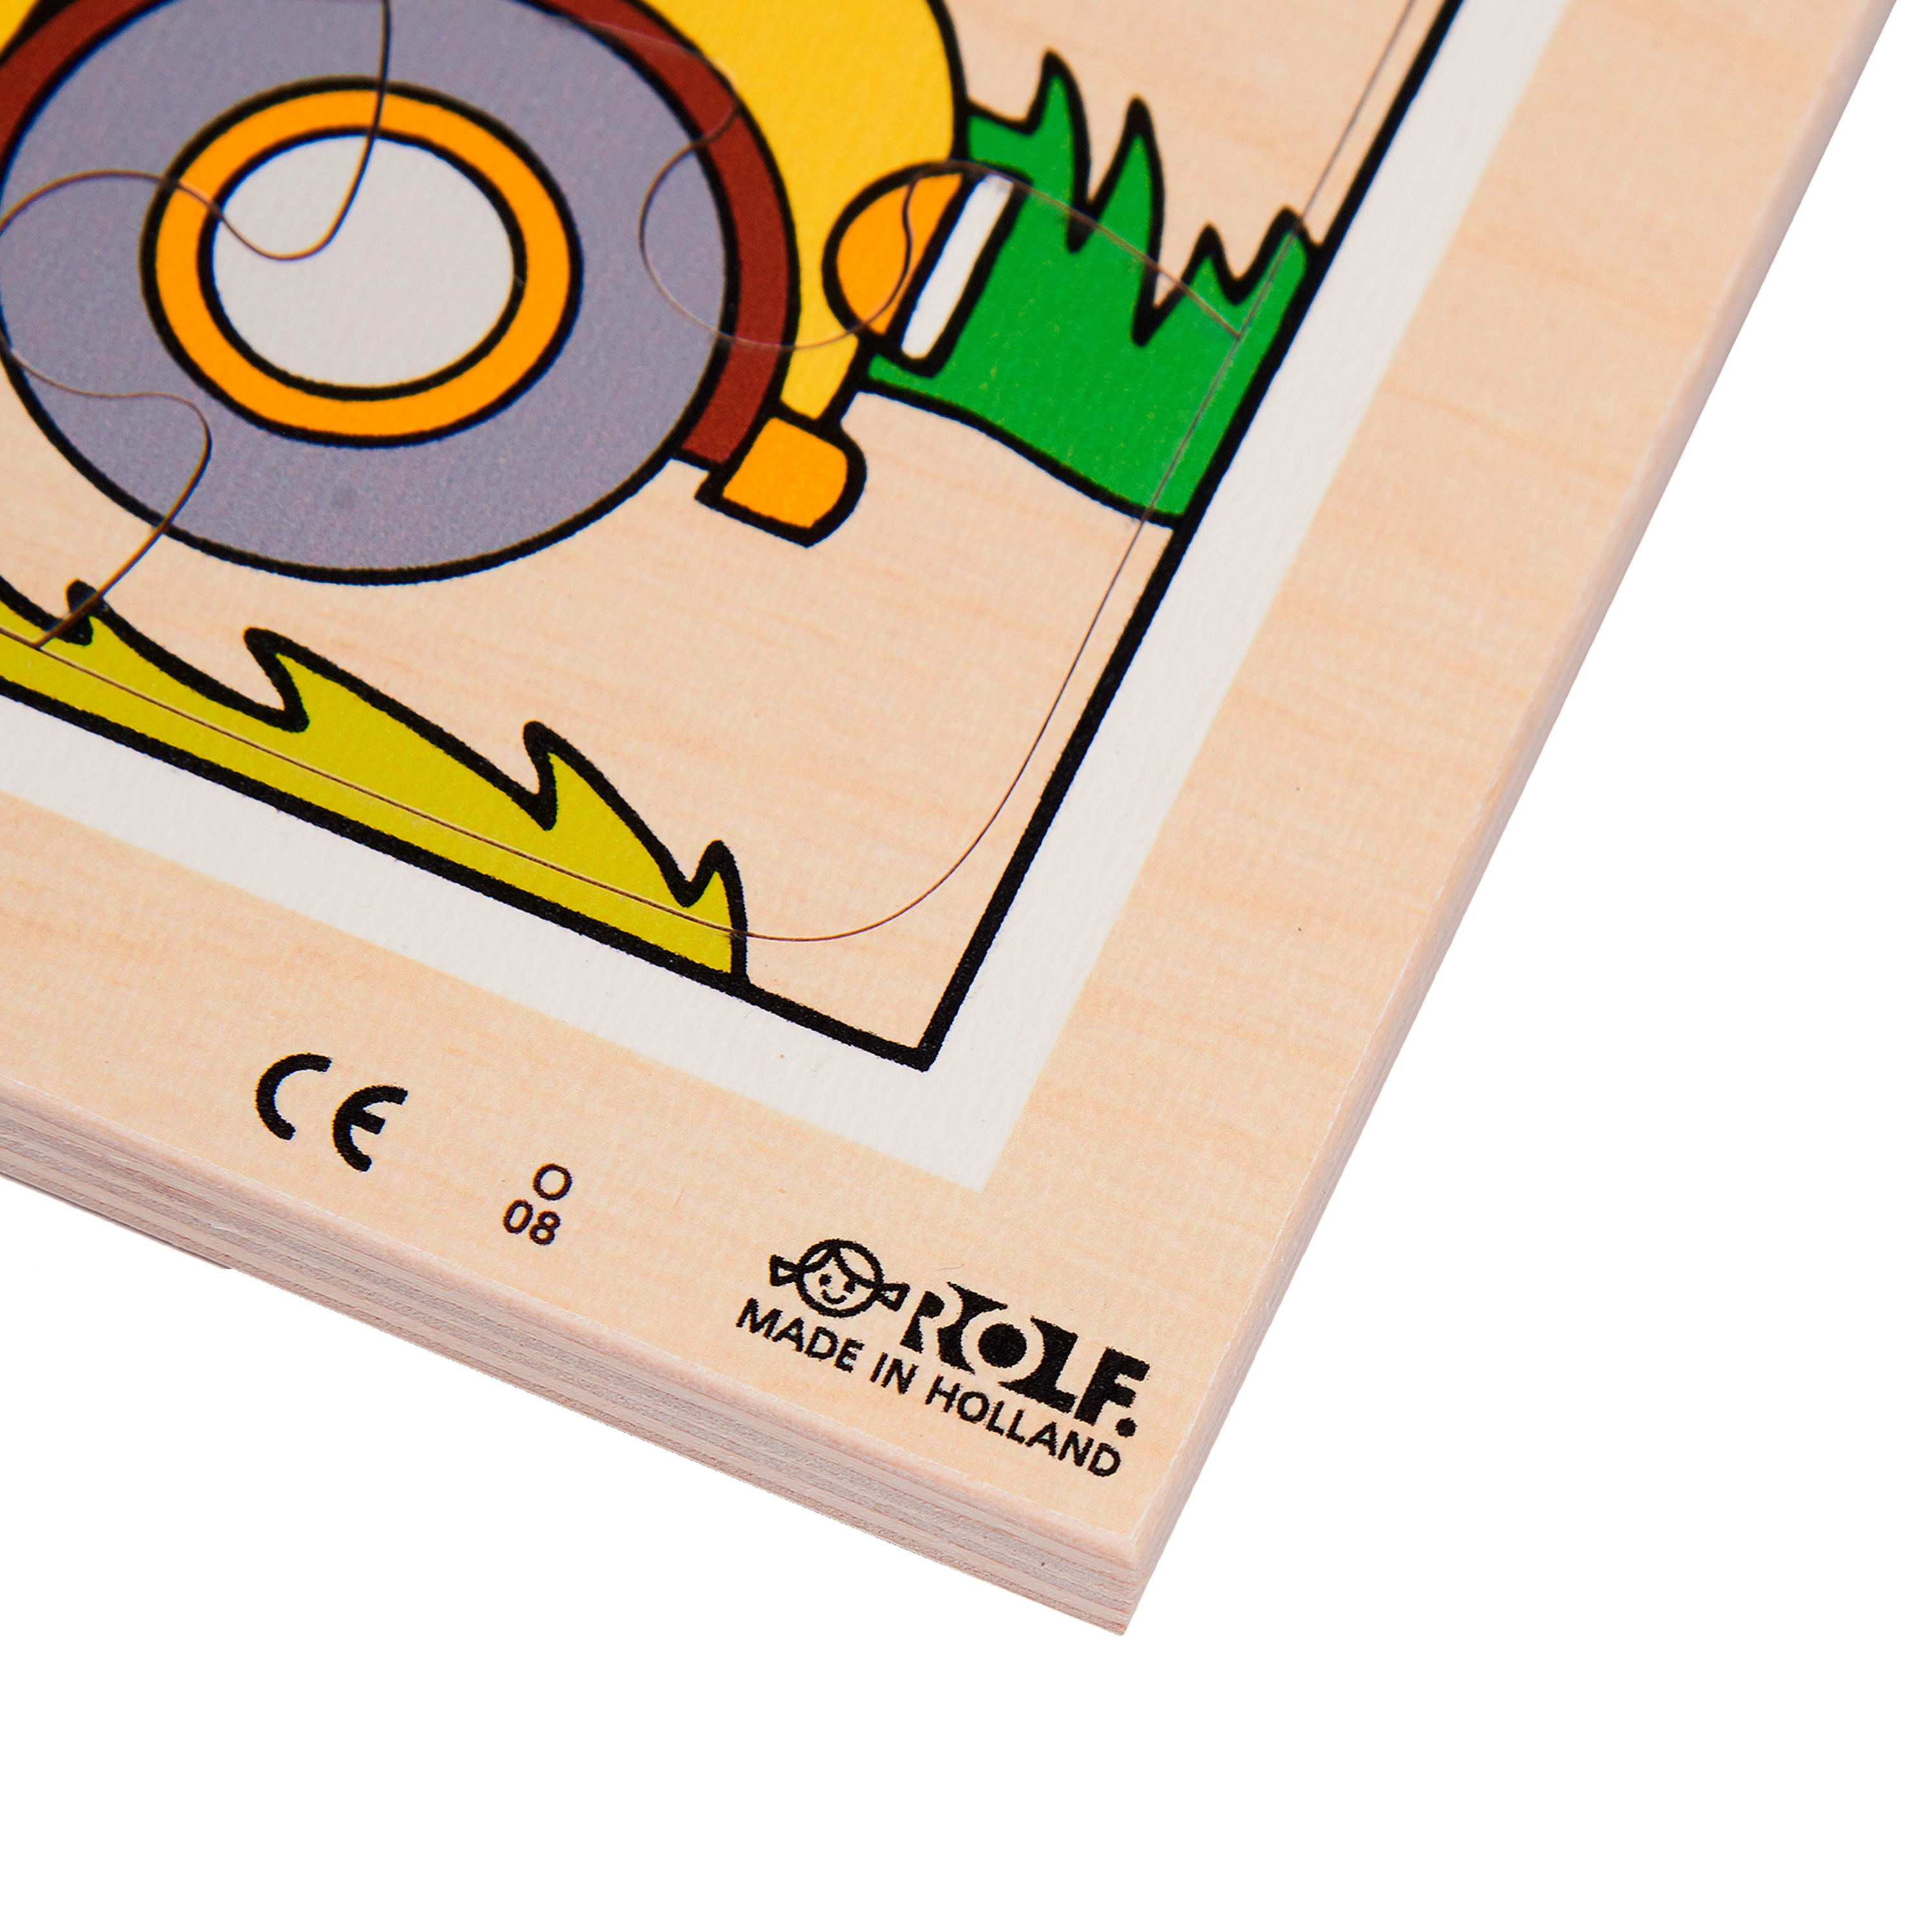 Rahmenpuzzle-Set 'Transport', 5 Puzzles aus Holz